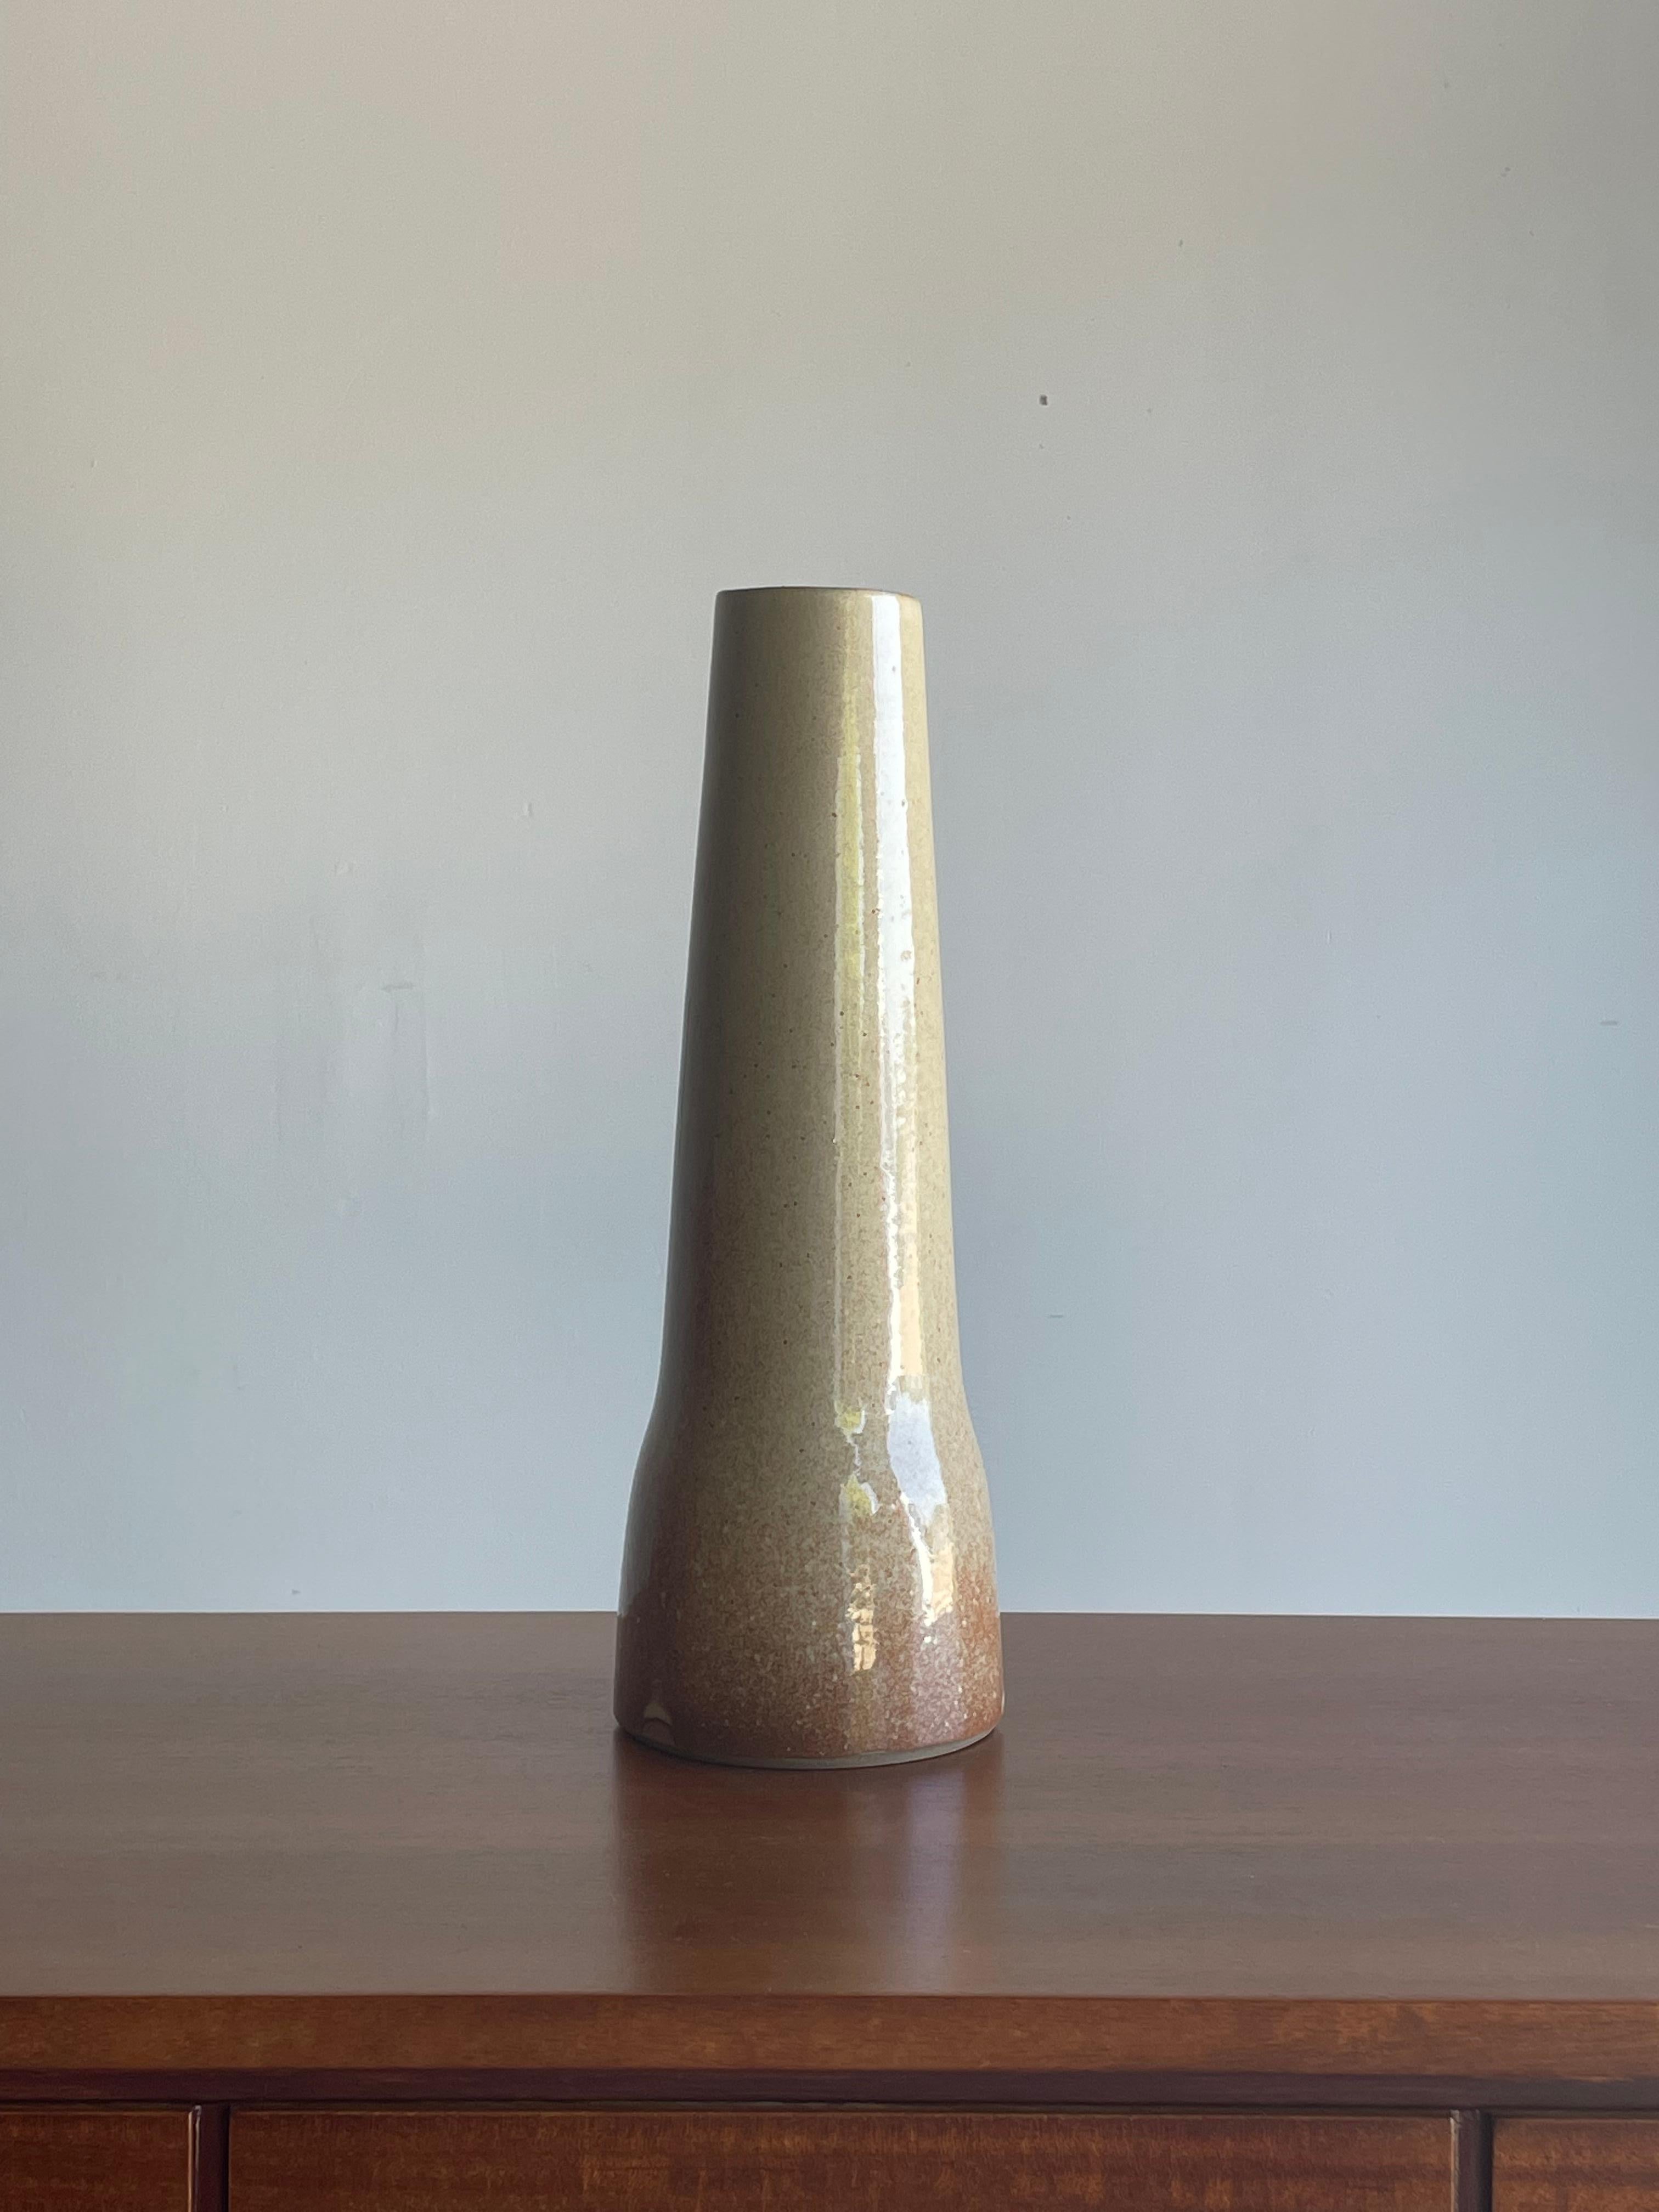 Un grand vase conçu par Jane et Gordon Martz pour les Studios Marshall dans une glaçure rose/rougeâtre. Célèbre pour ses lampes de table en céramique très recherchées, elle propose ici un vase en céramique. Merveilleuse palette de couleurs. Très bon